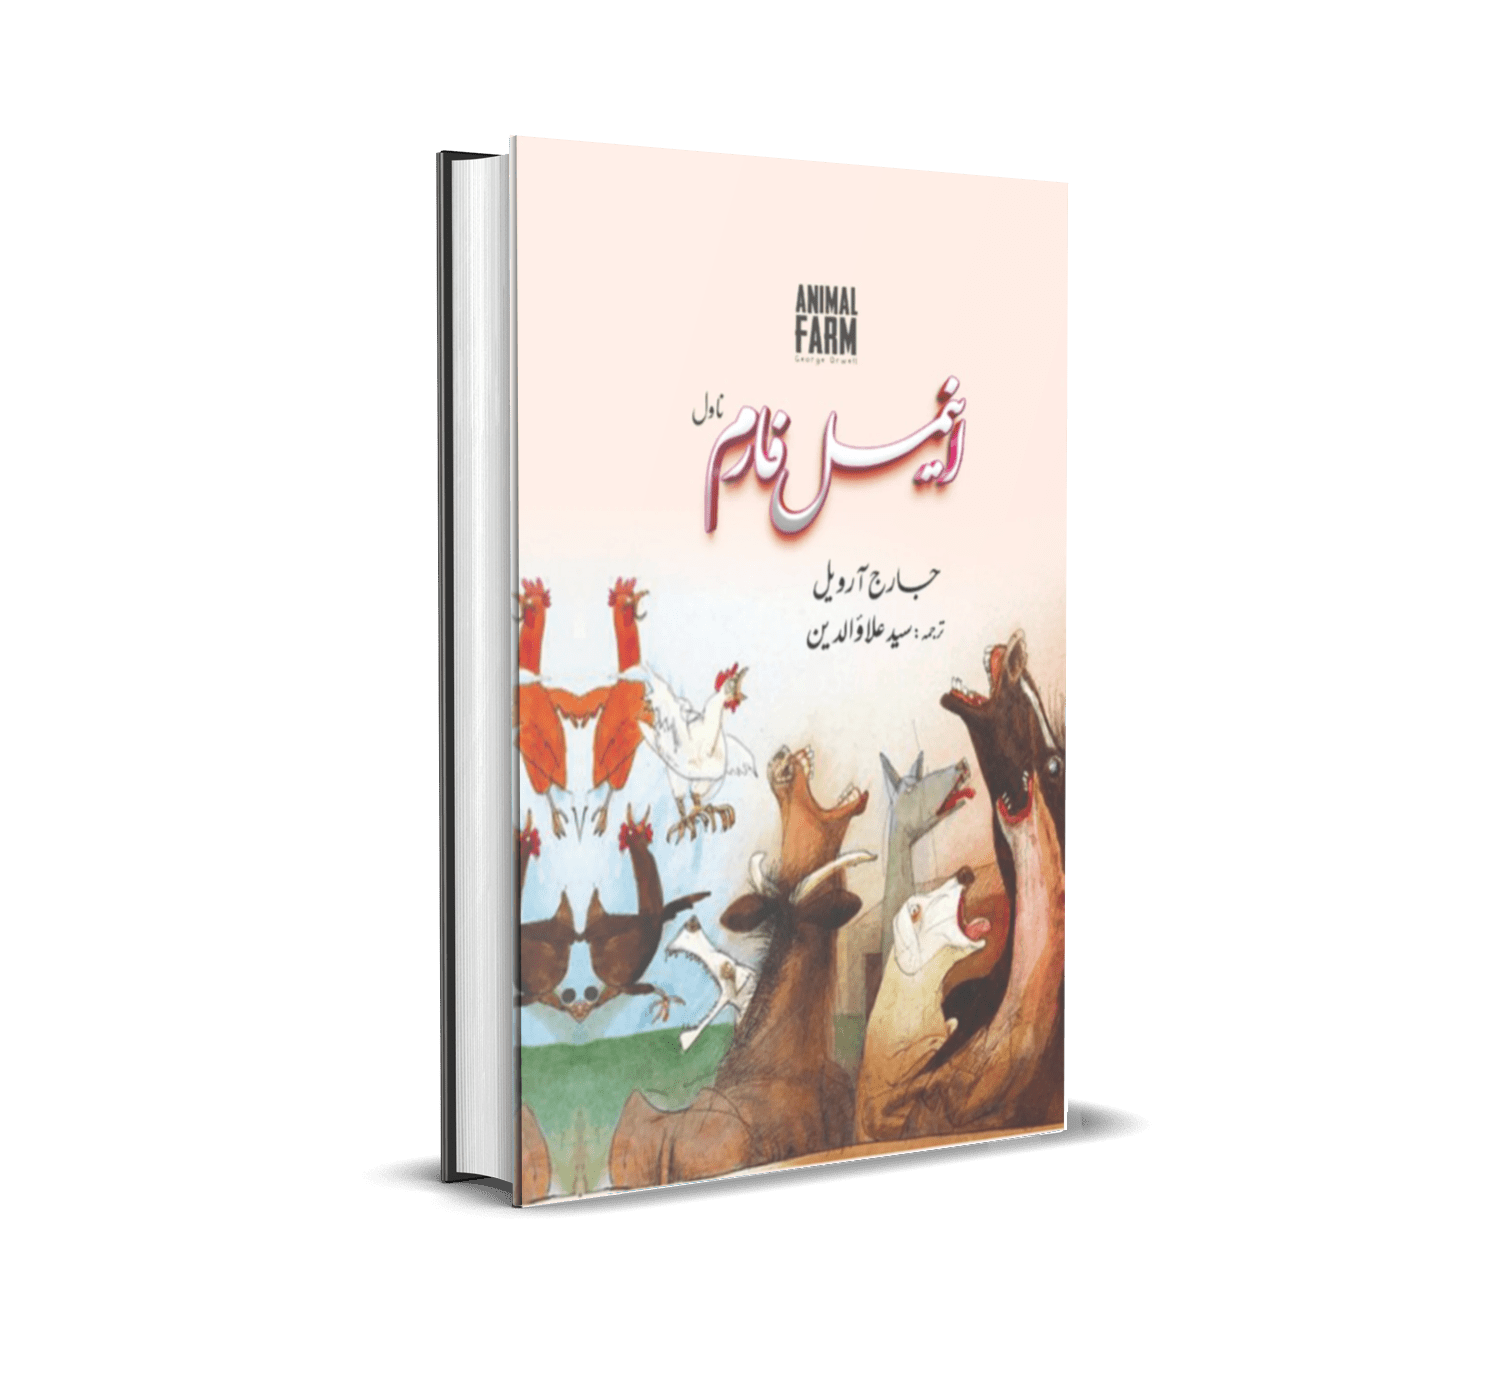 Animal Farm by George Orwell Urdu